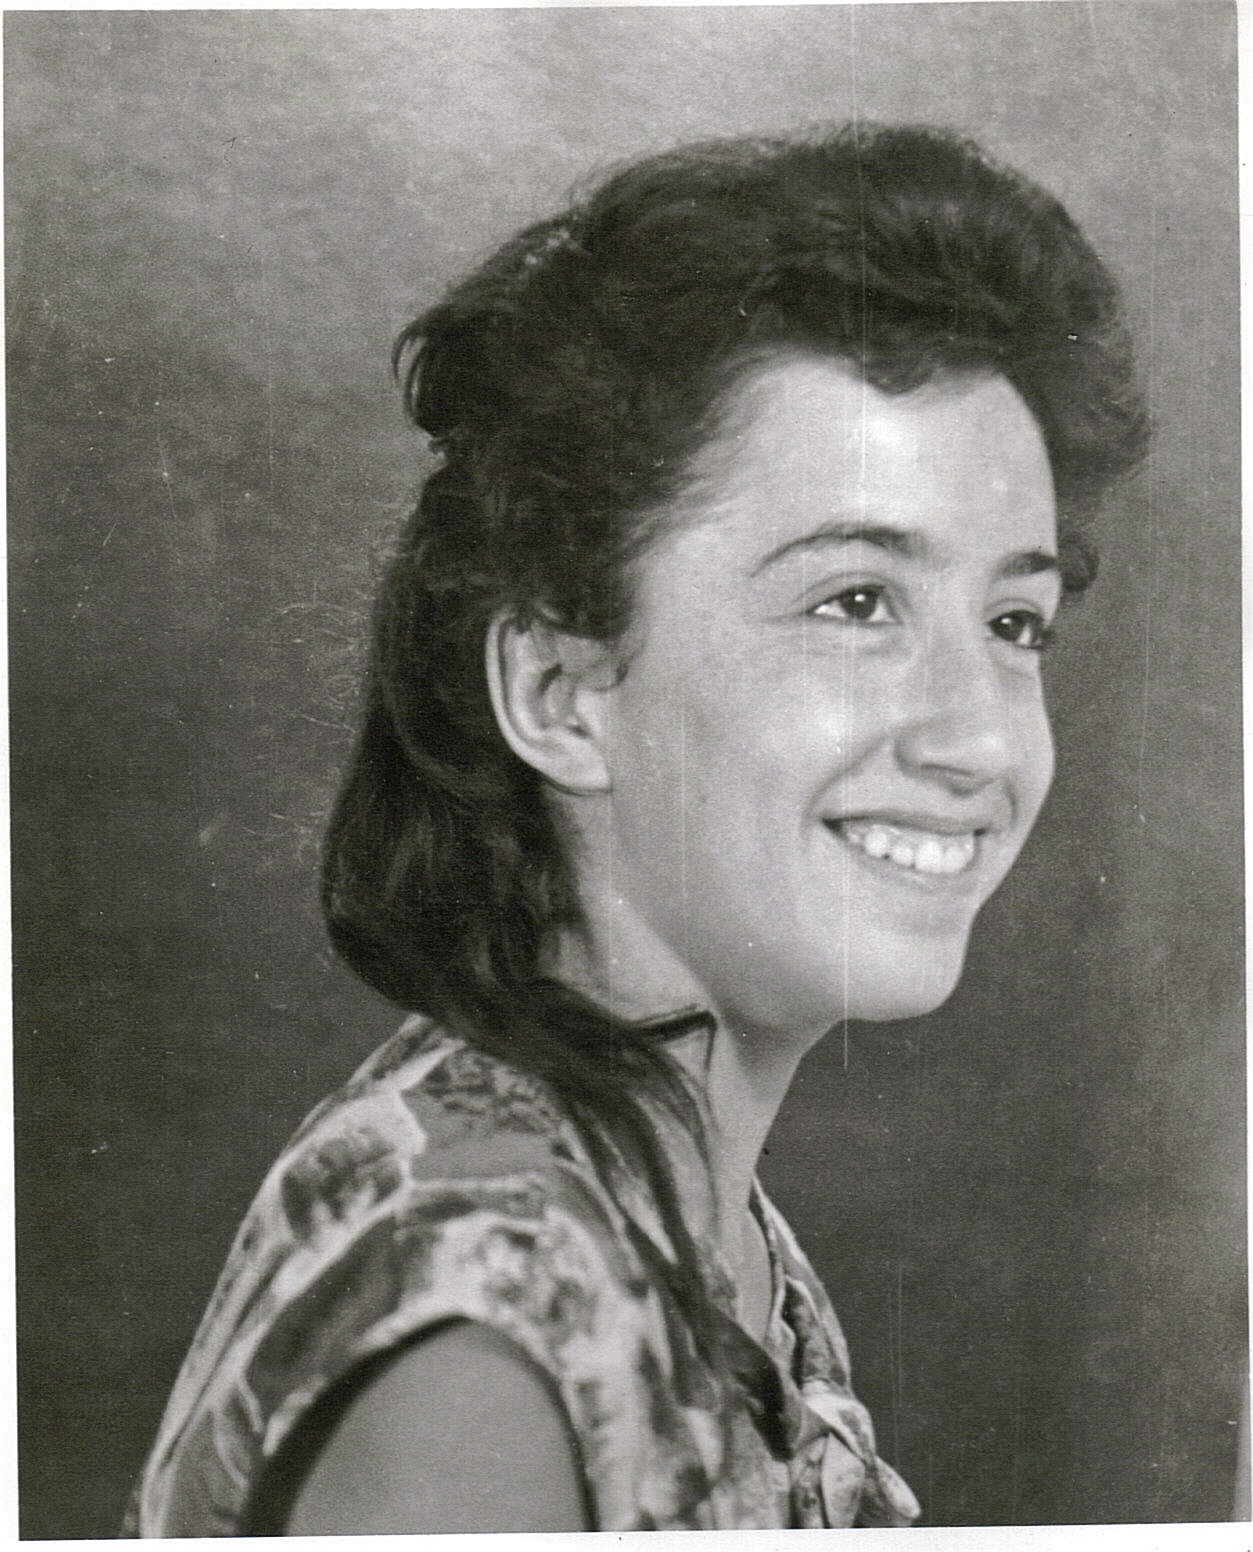 Katarína as a high school student.
